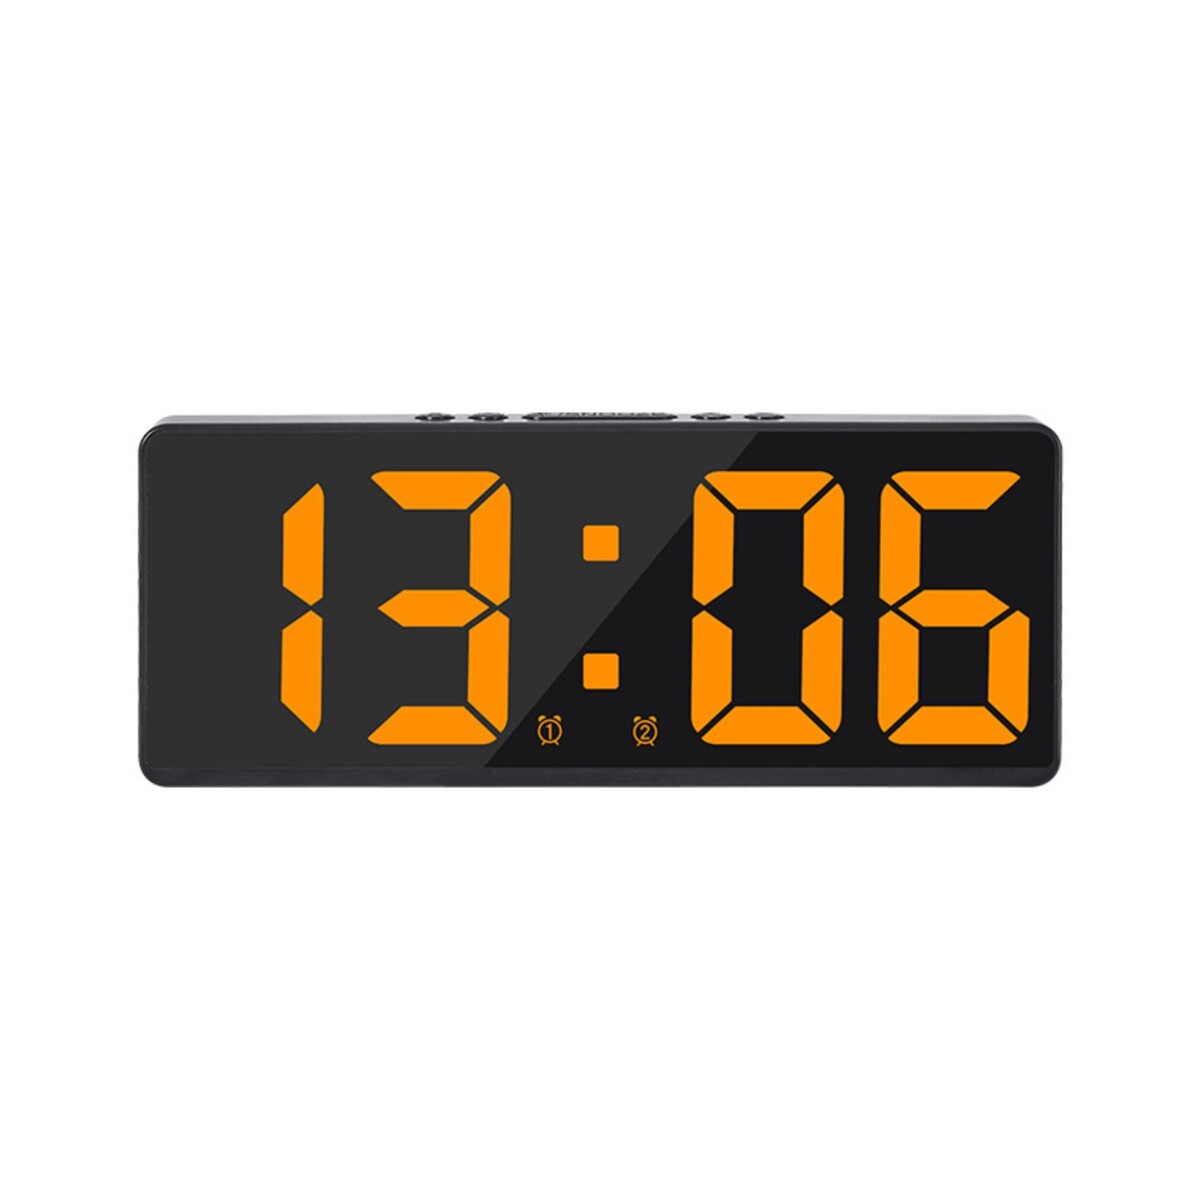 Часы - будильник электронные настольные с термометром, календарем, 15 х 6.3 см, ааа, usb часы электронные настенные настольные с будильником 36 х 15 х 3 см белые цифры